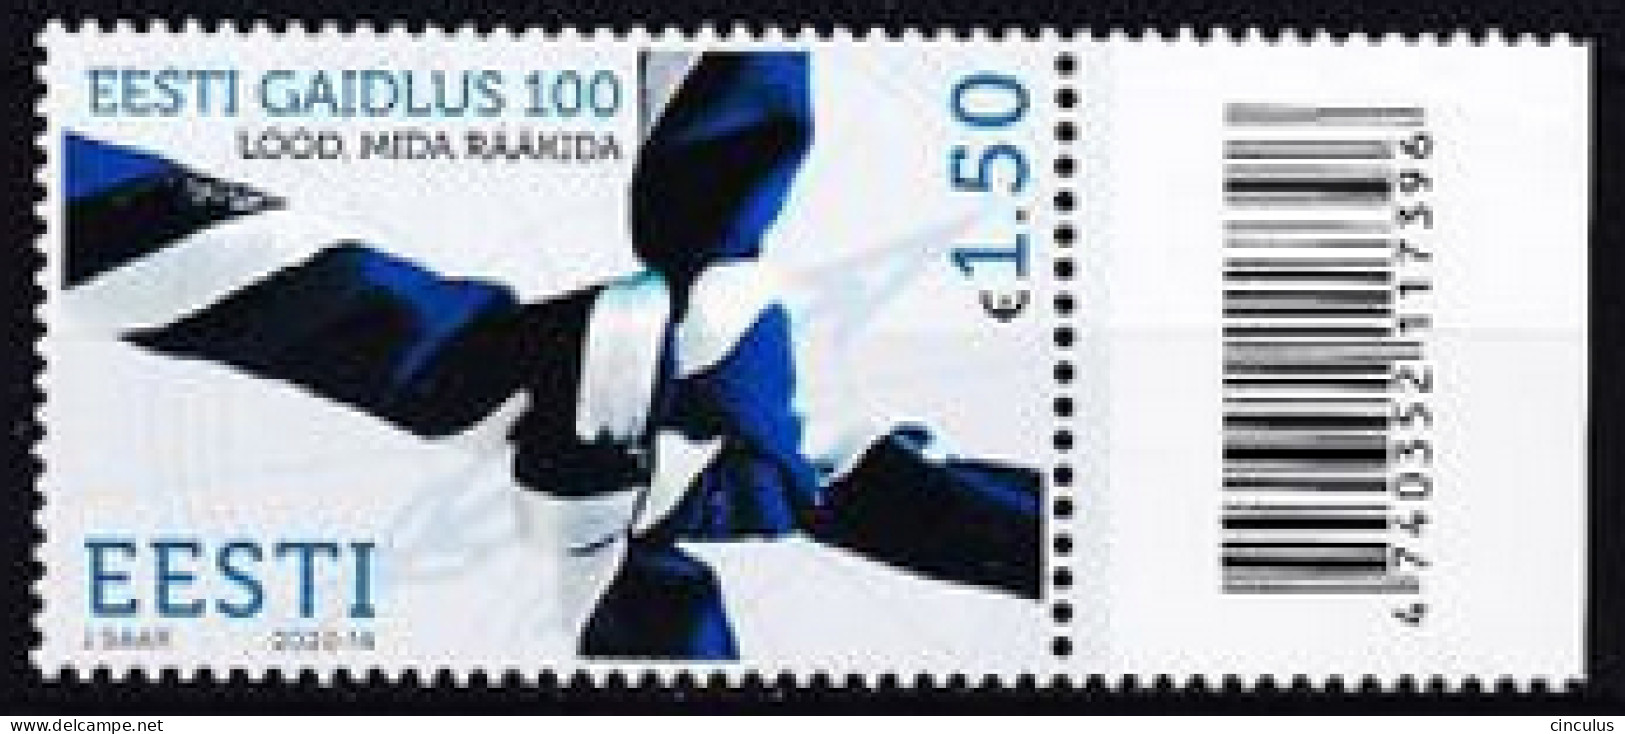 2020. Estonia. The 100th Anniversary Of Guiding In Estonia. MNH. Mi. Nr. 984 - Estonie